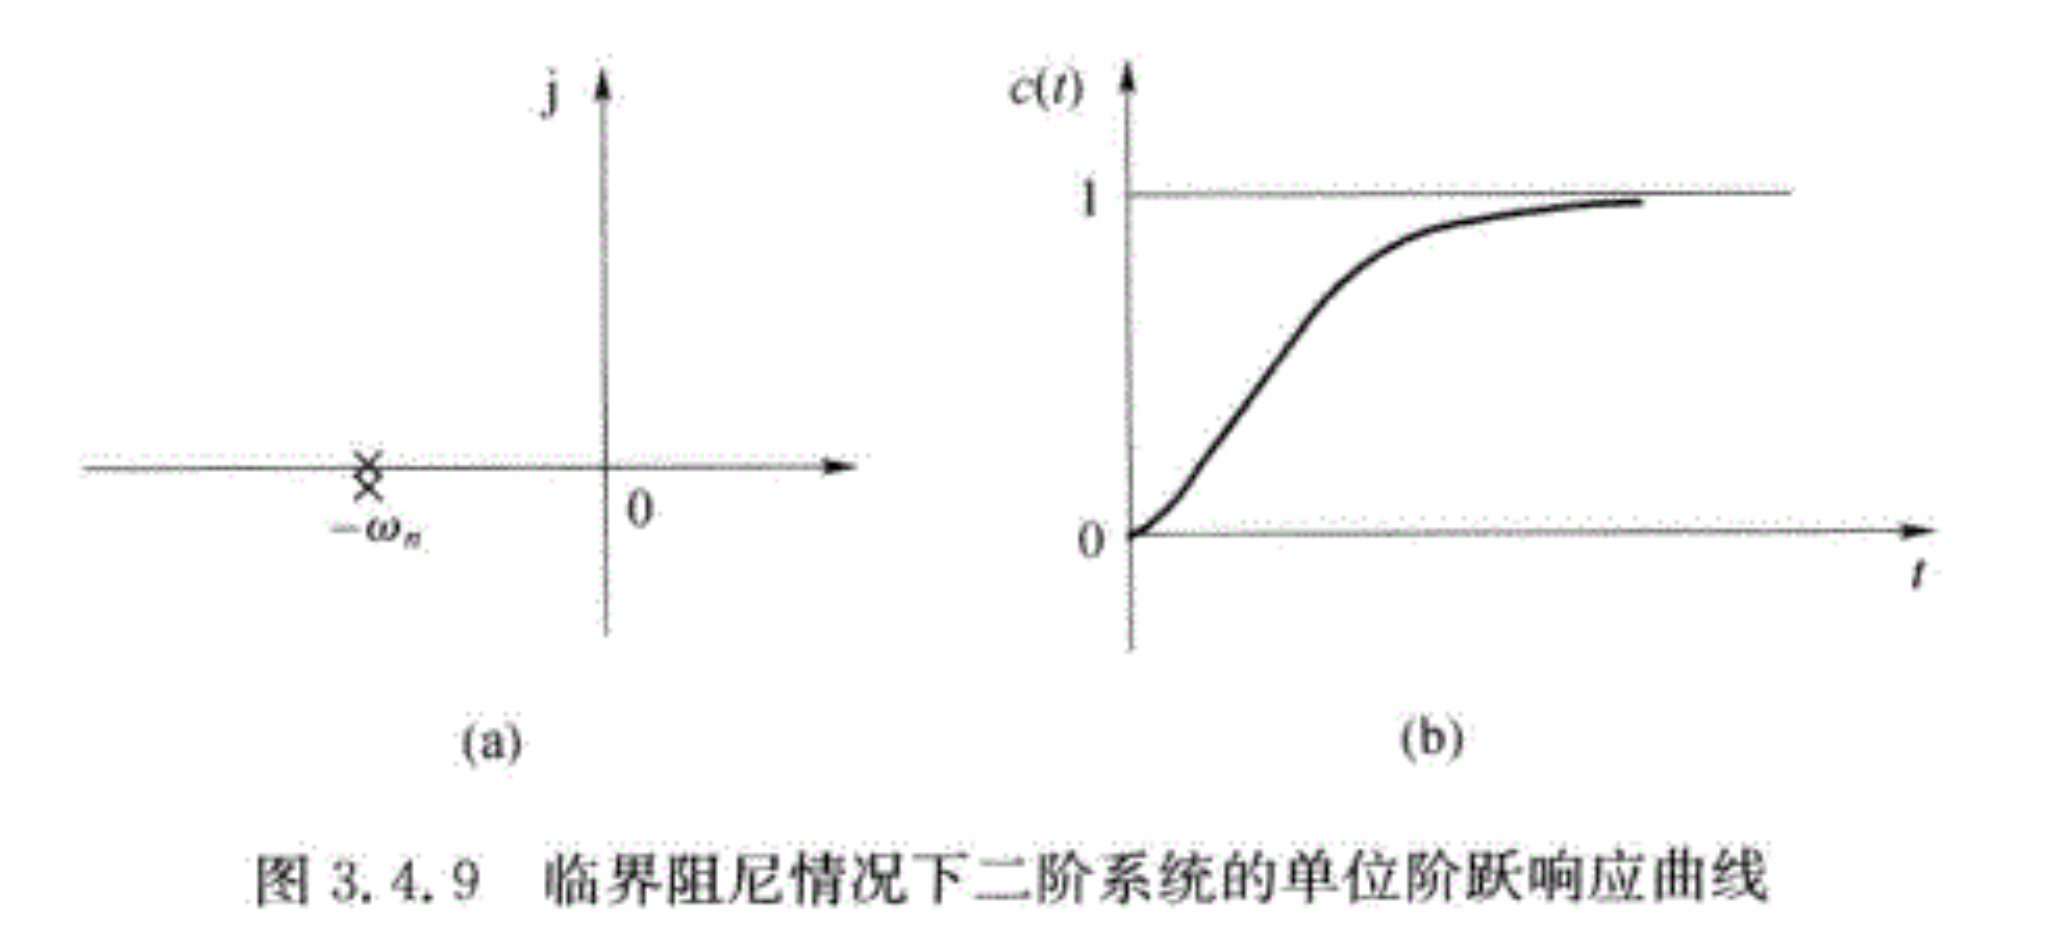 临界阻尼情况下二阶系统的单位阶跃响应曲线